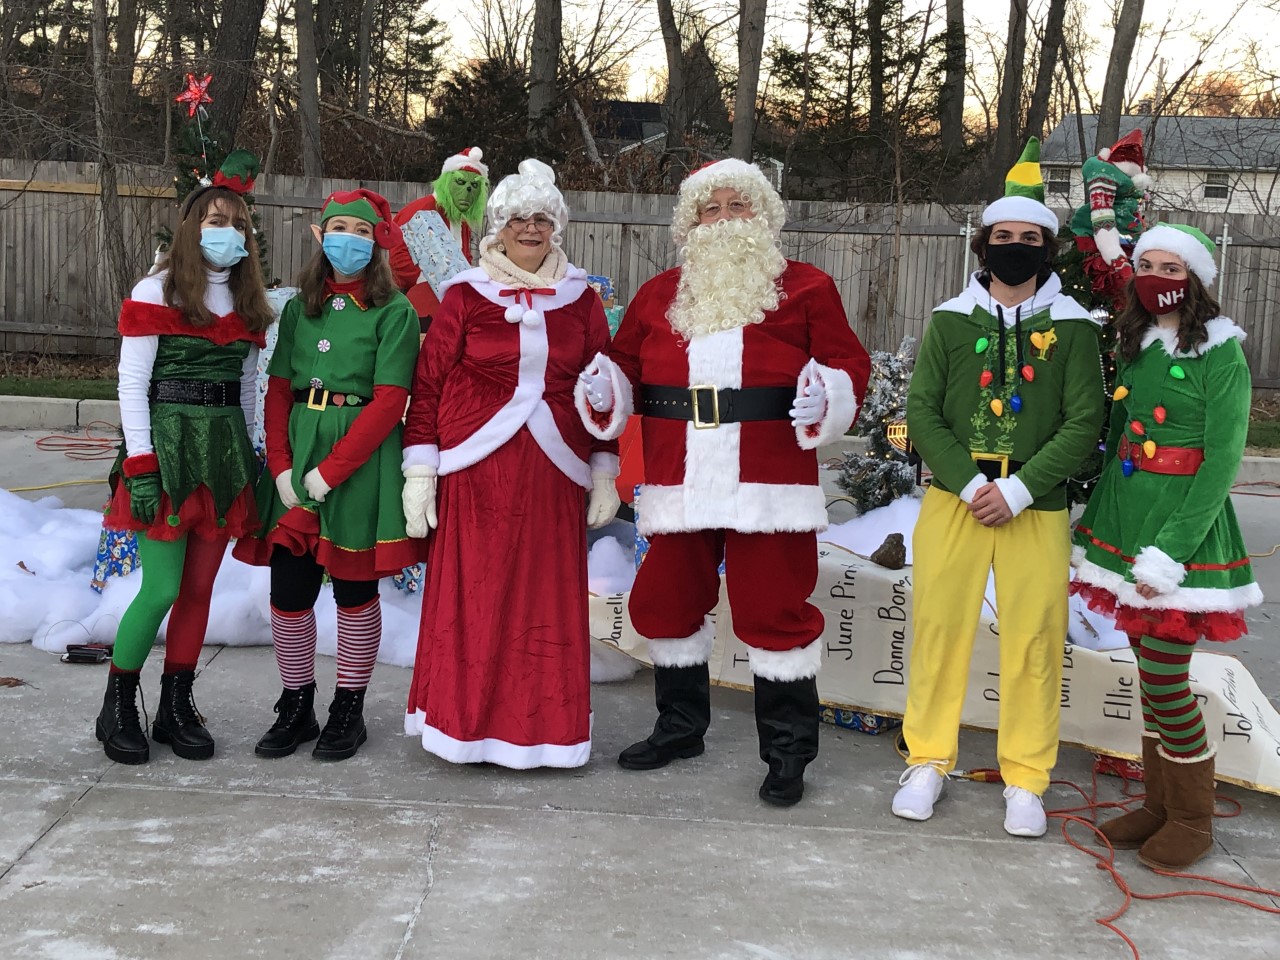 Santa Claus, Mrs. Claus, and their elves.